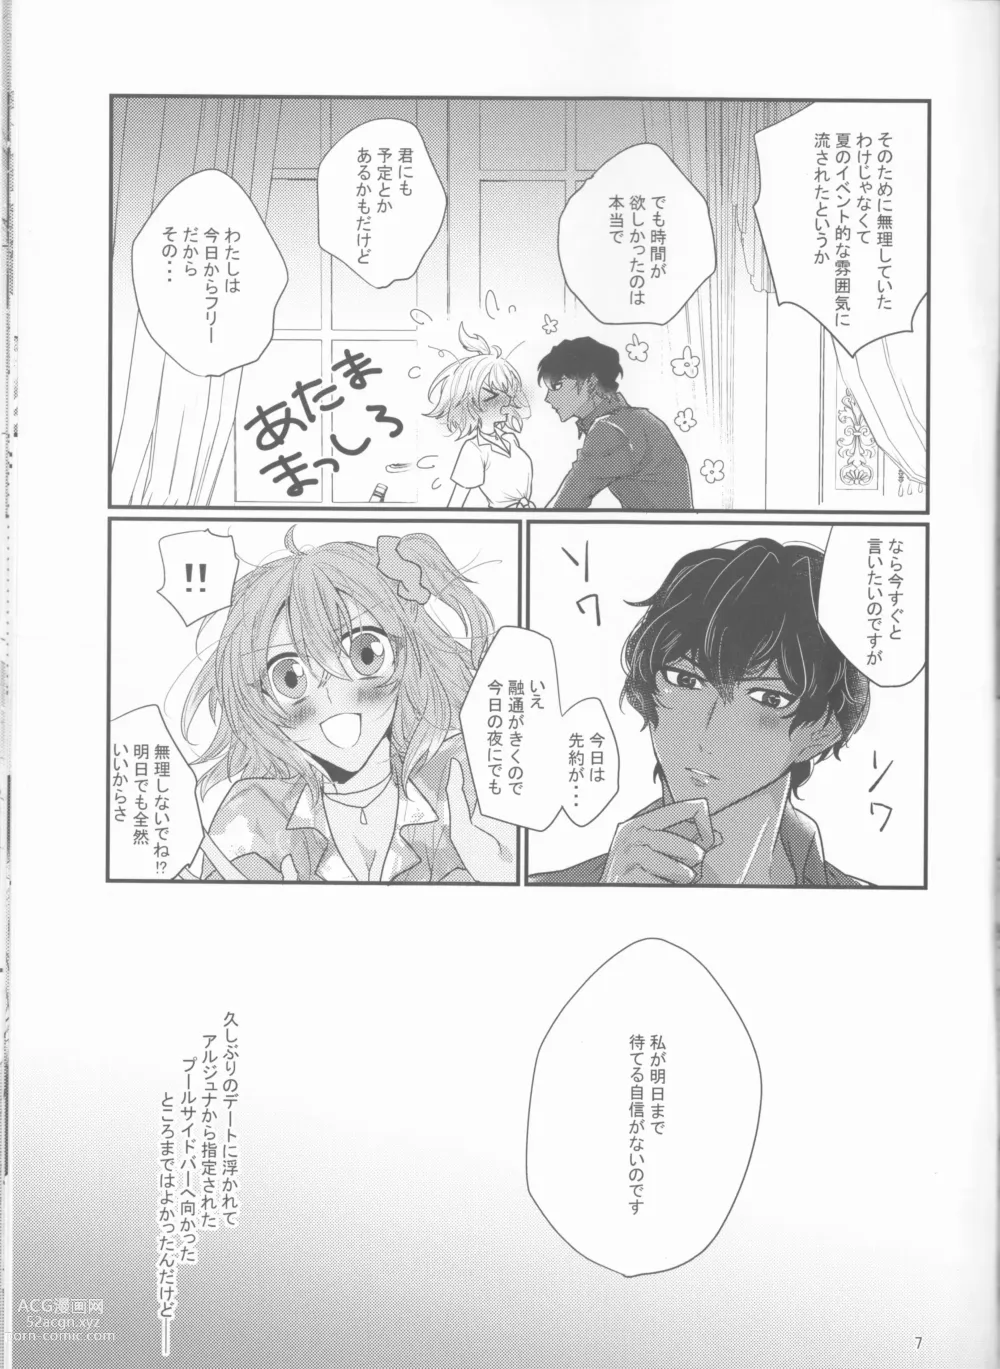 Page 7 of doujinshi Suiai